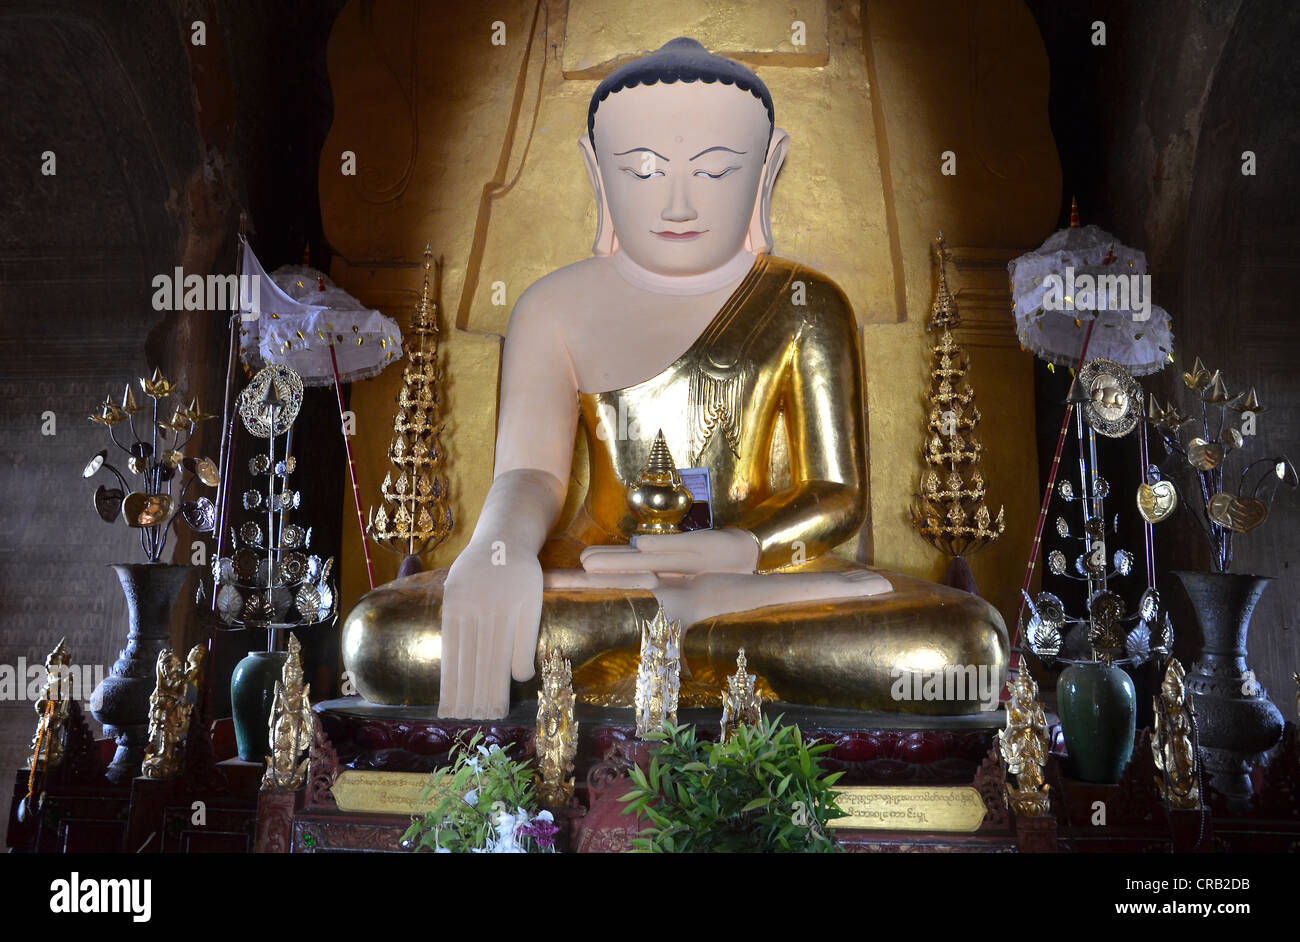 Parzialmente dorato Buddha seduto in una pagoda, Old Bagan, pagano, birmania, myanmar, Asia sud-orientale, Asia Foto Stock